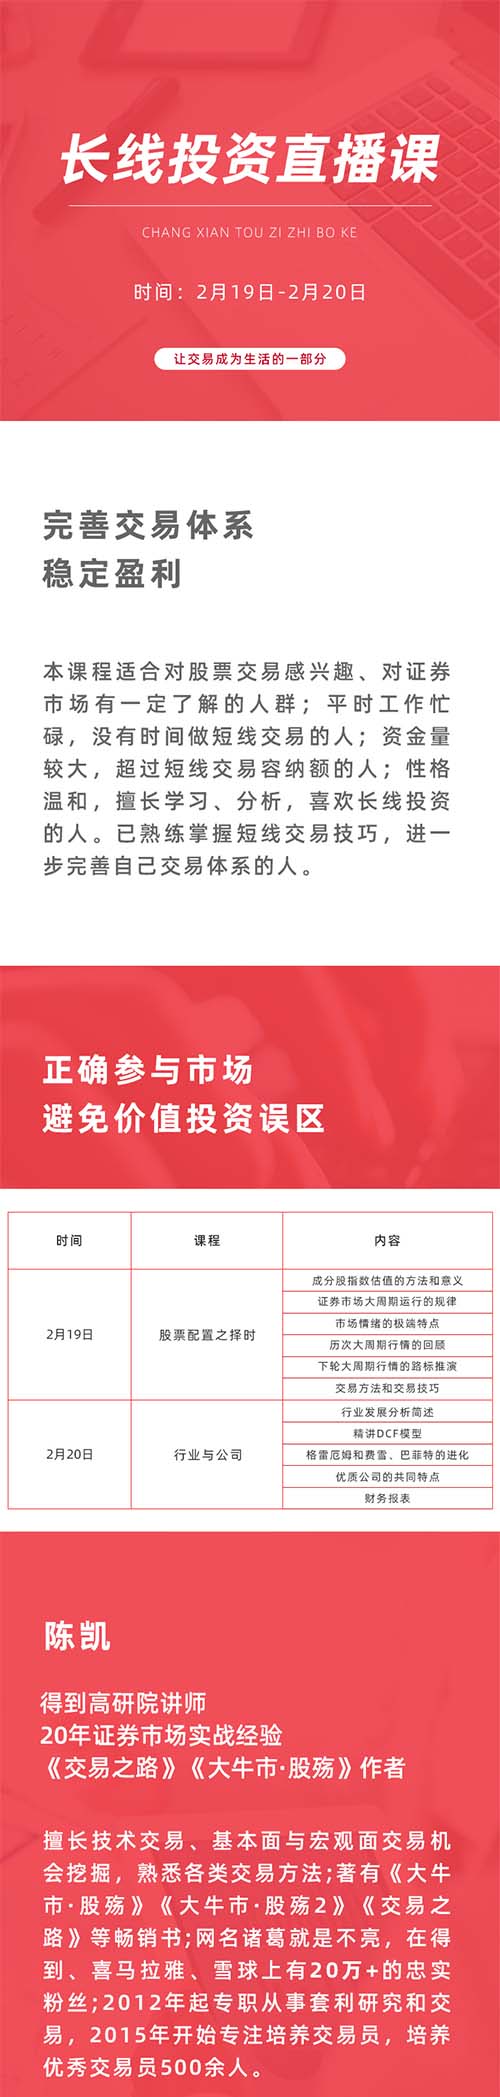 陈凯长线投资课第2期-期货法律法规课程